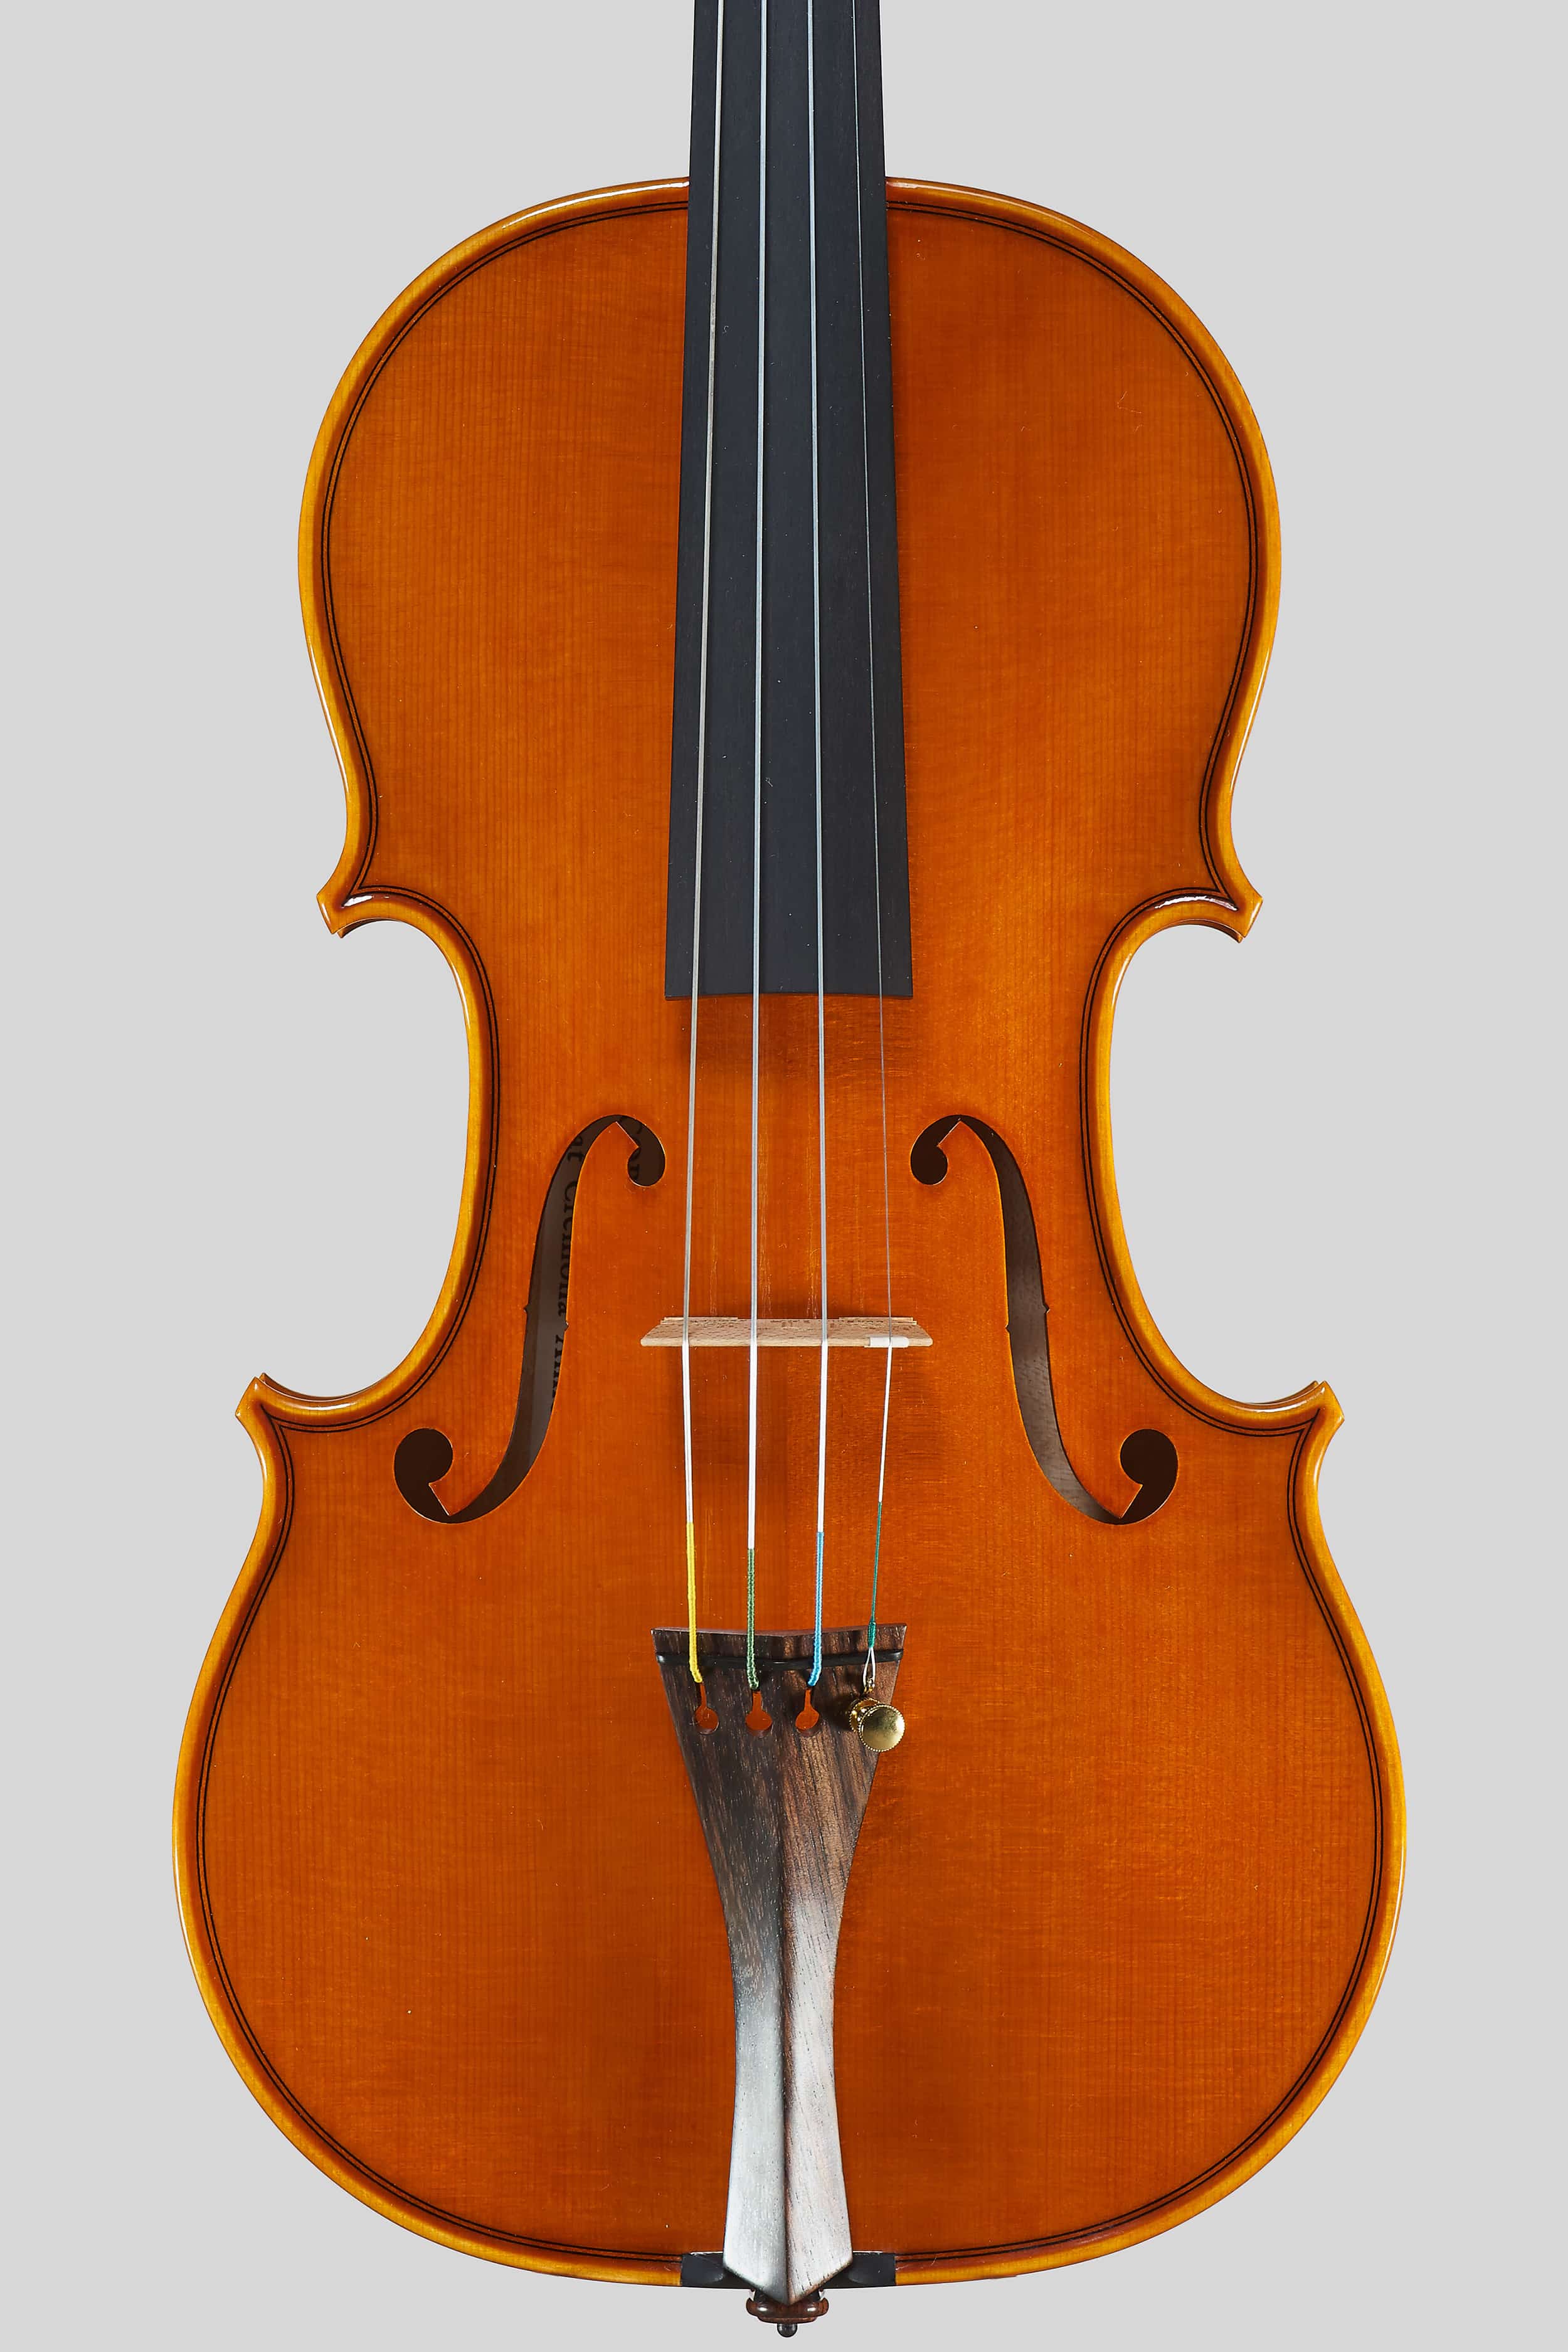 Anno 2016 – Violino modello A. Stradivari “Soil” 1714 - Tavola